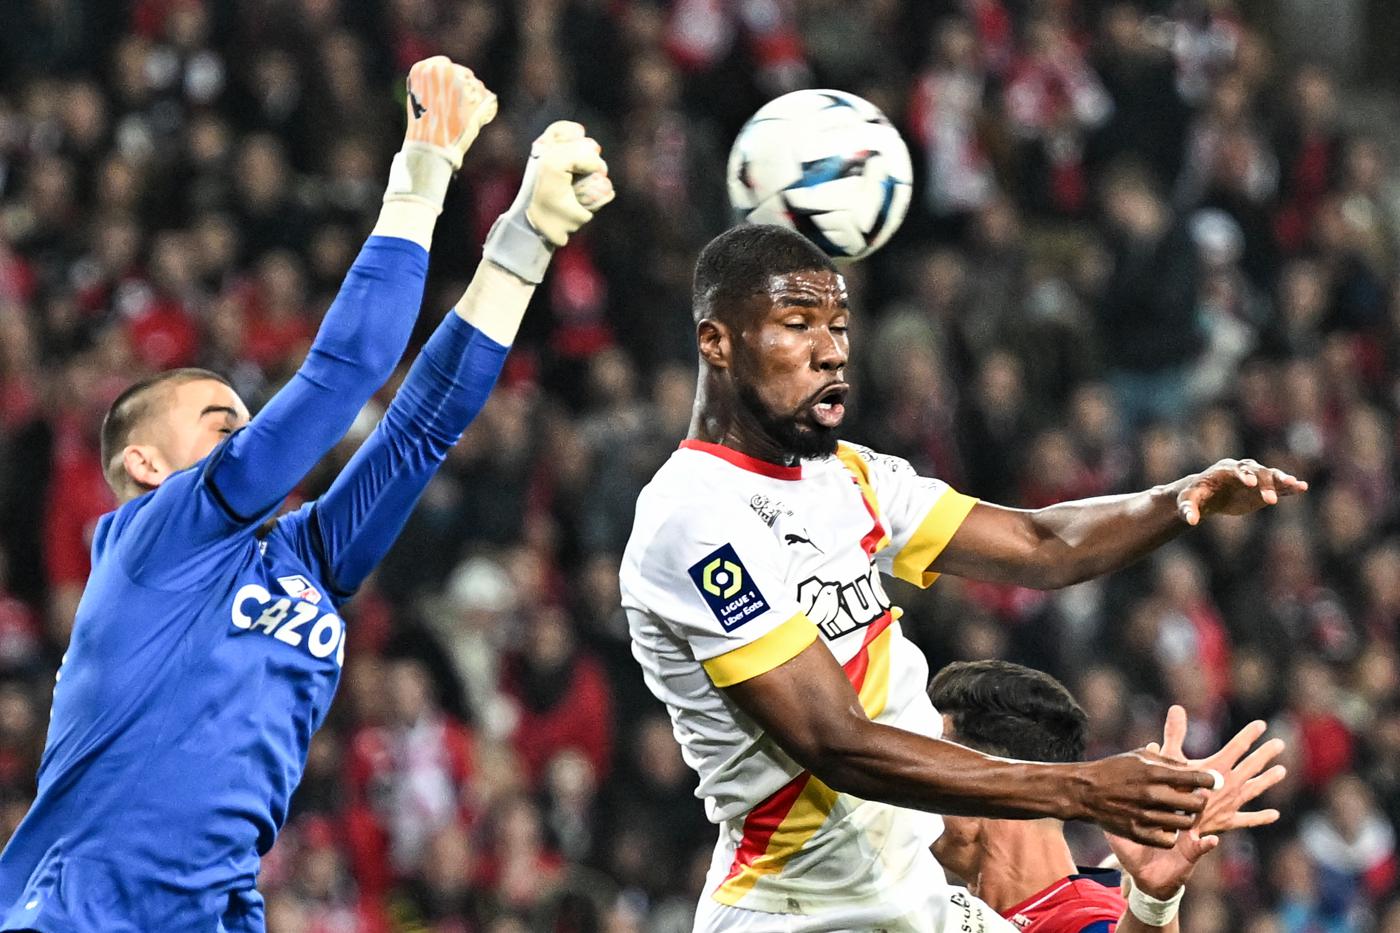 Lance gegen Lille - 1:1. Französische Meisterschaft, Runde 26. Spielbericht, Statistik.